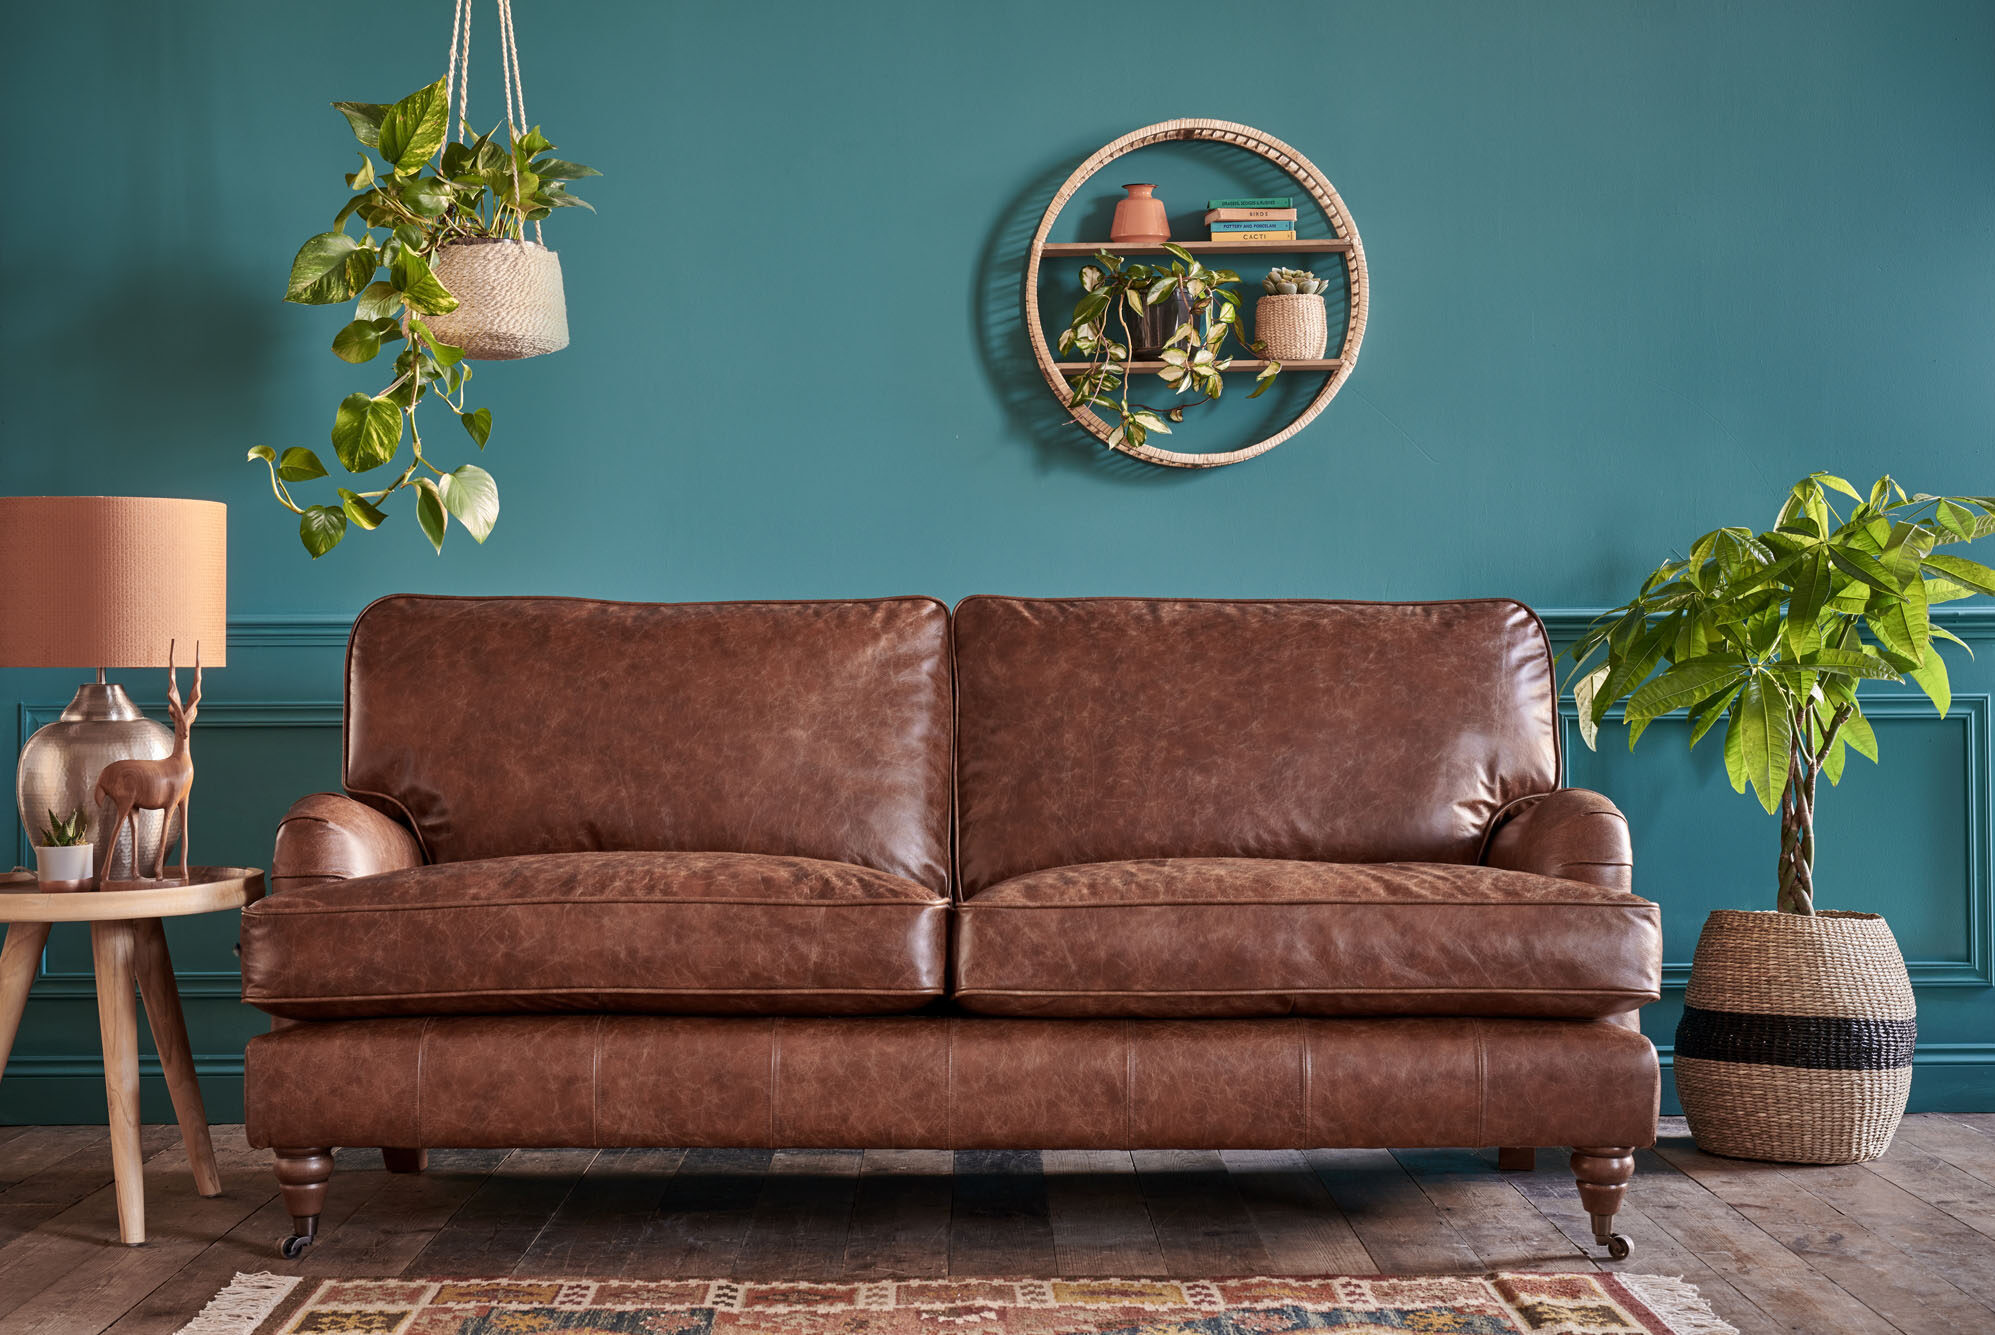 Duke 3 Seater Leather Sofa